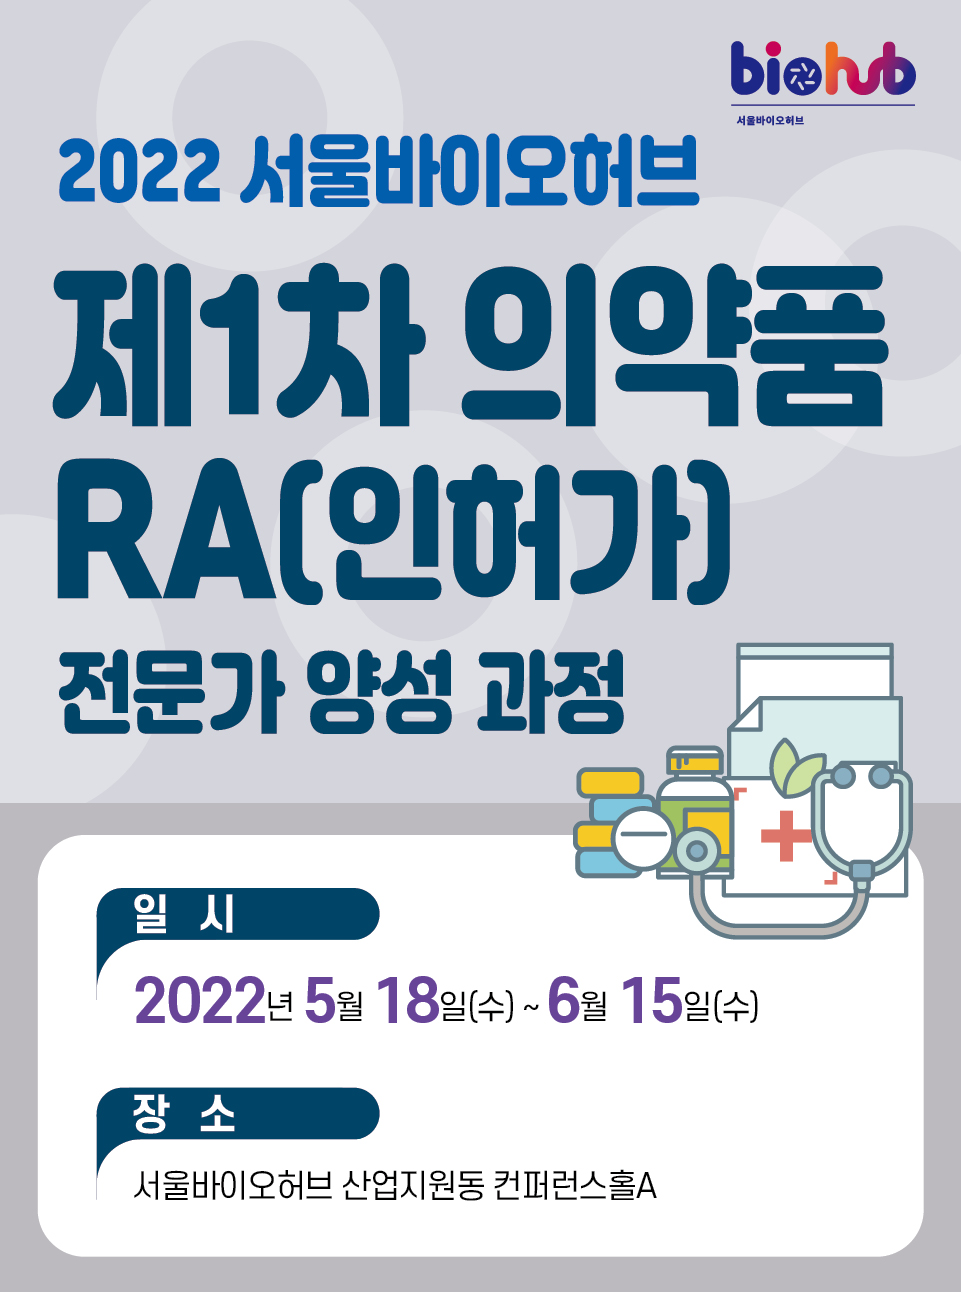 2022 서울바이오허브 제1차 의약품 RA(인허가) 전문가 양성 과정 일 시:2022년 5월 18일(수) ~ 6월 15일(수) 장소:서울바이오허브 산업지원동 컨퍼런스홀A